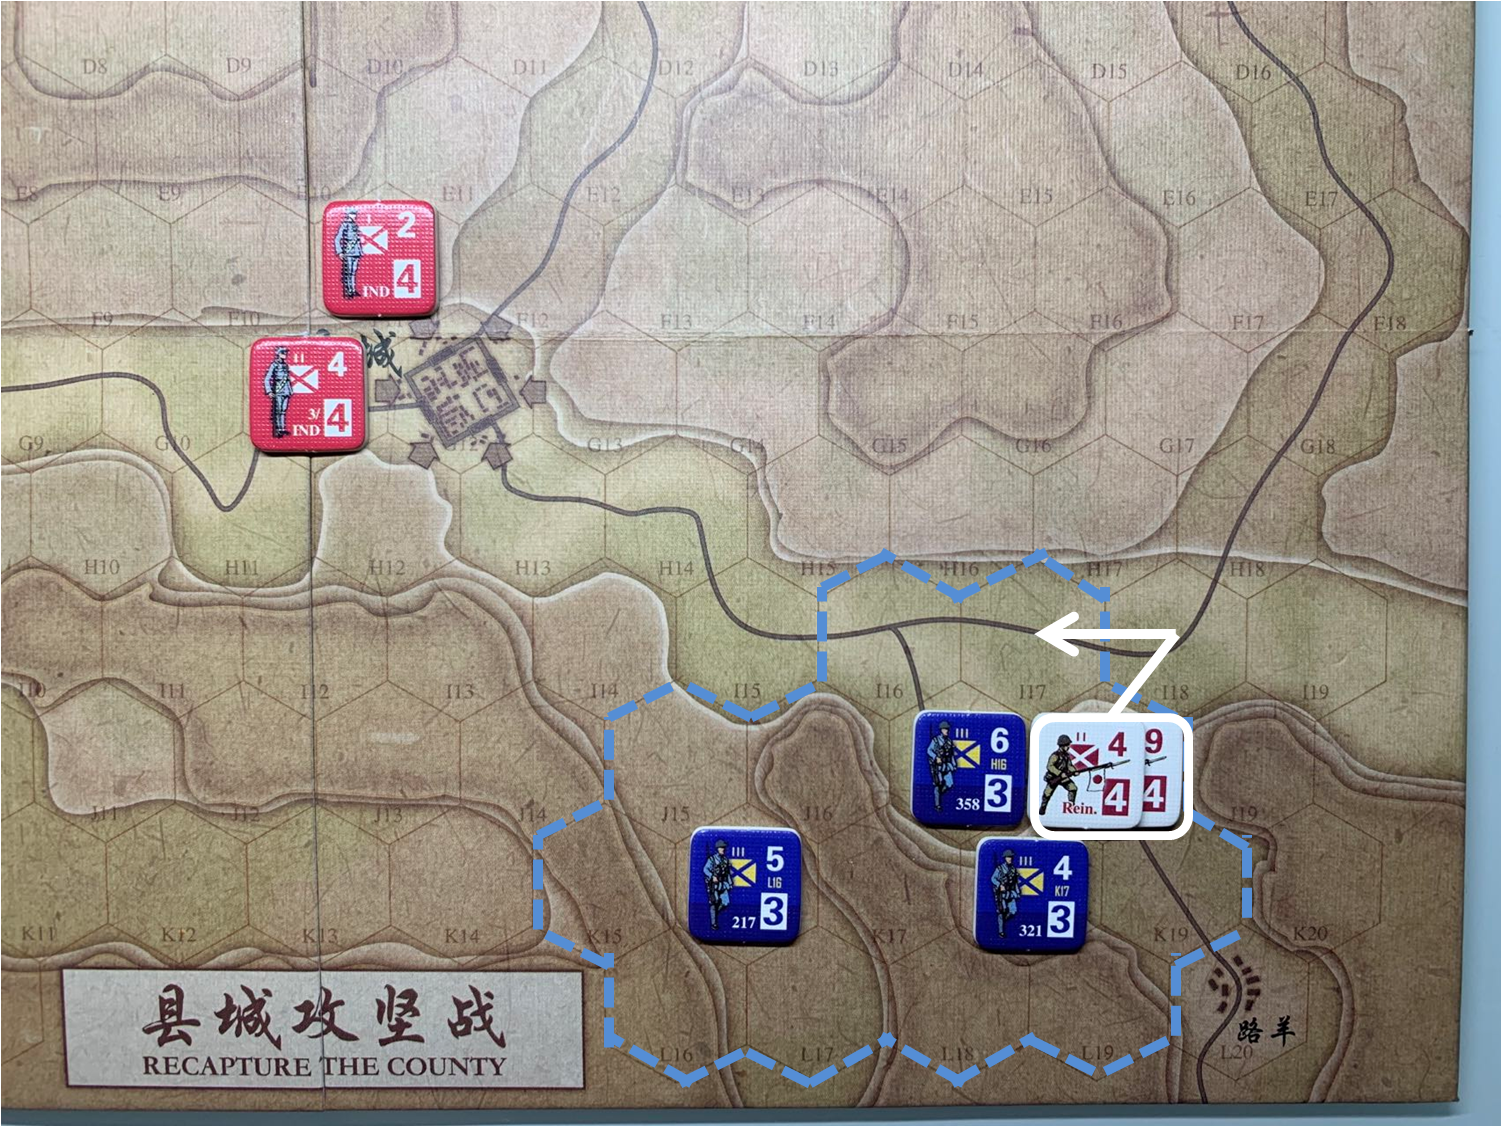 第二回合路羊方向日軍增援部隊（J18）對於移動命令3的執行計劃